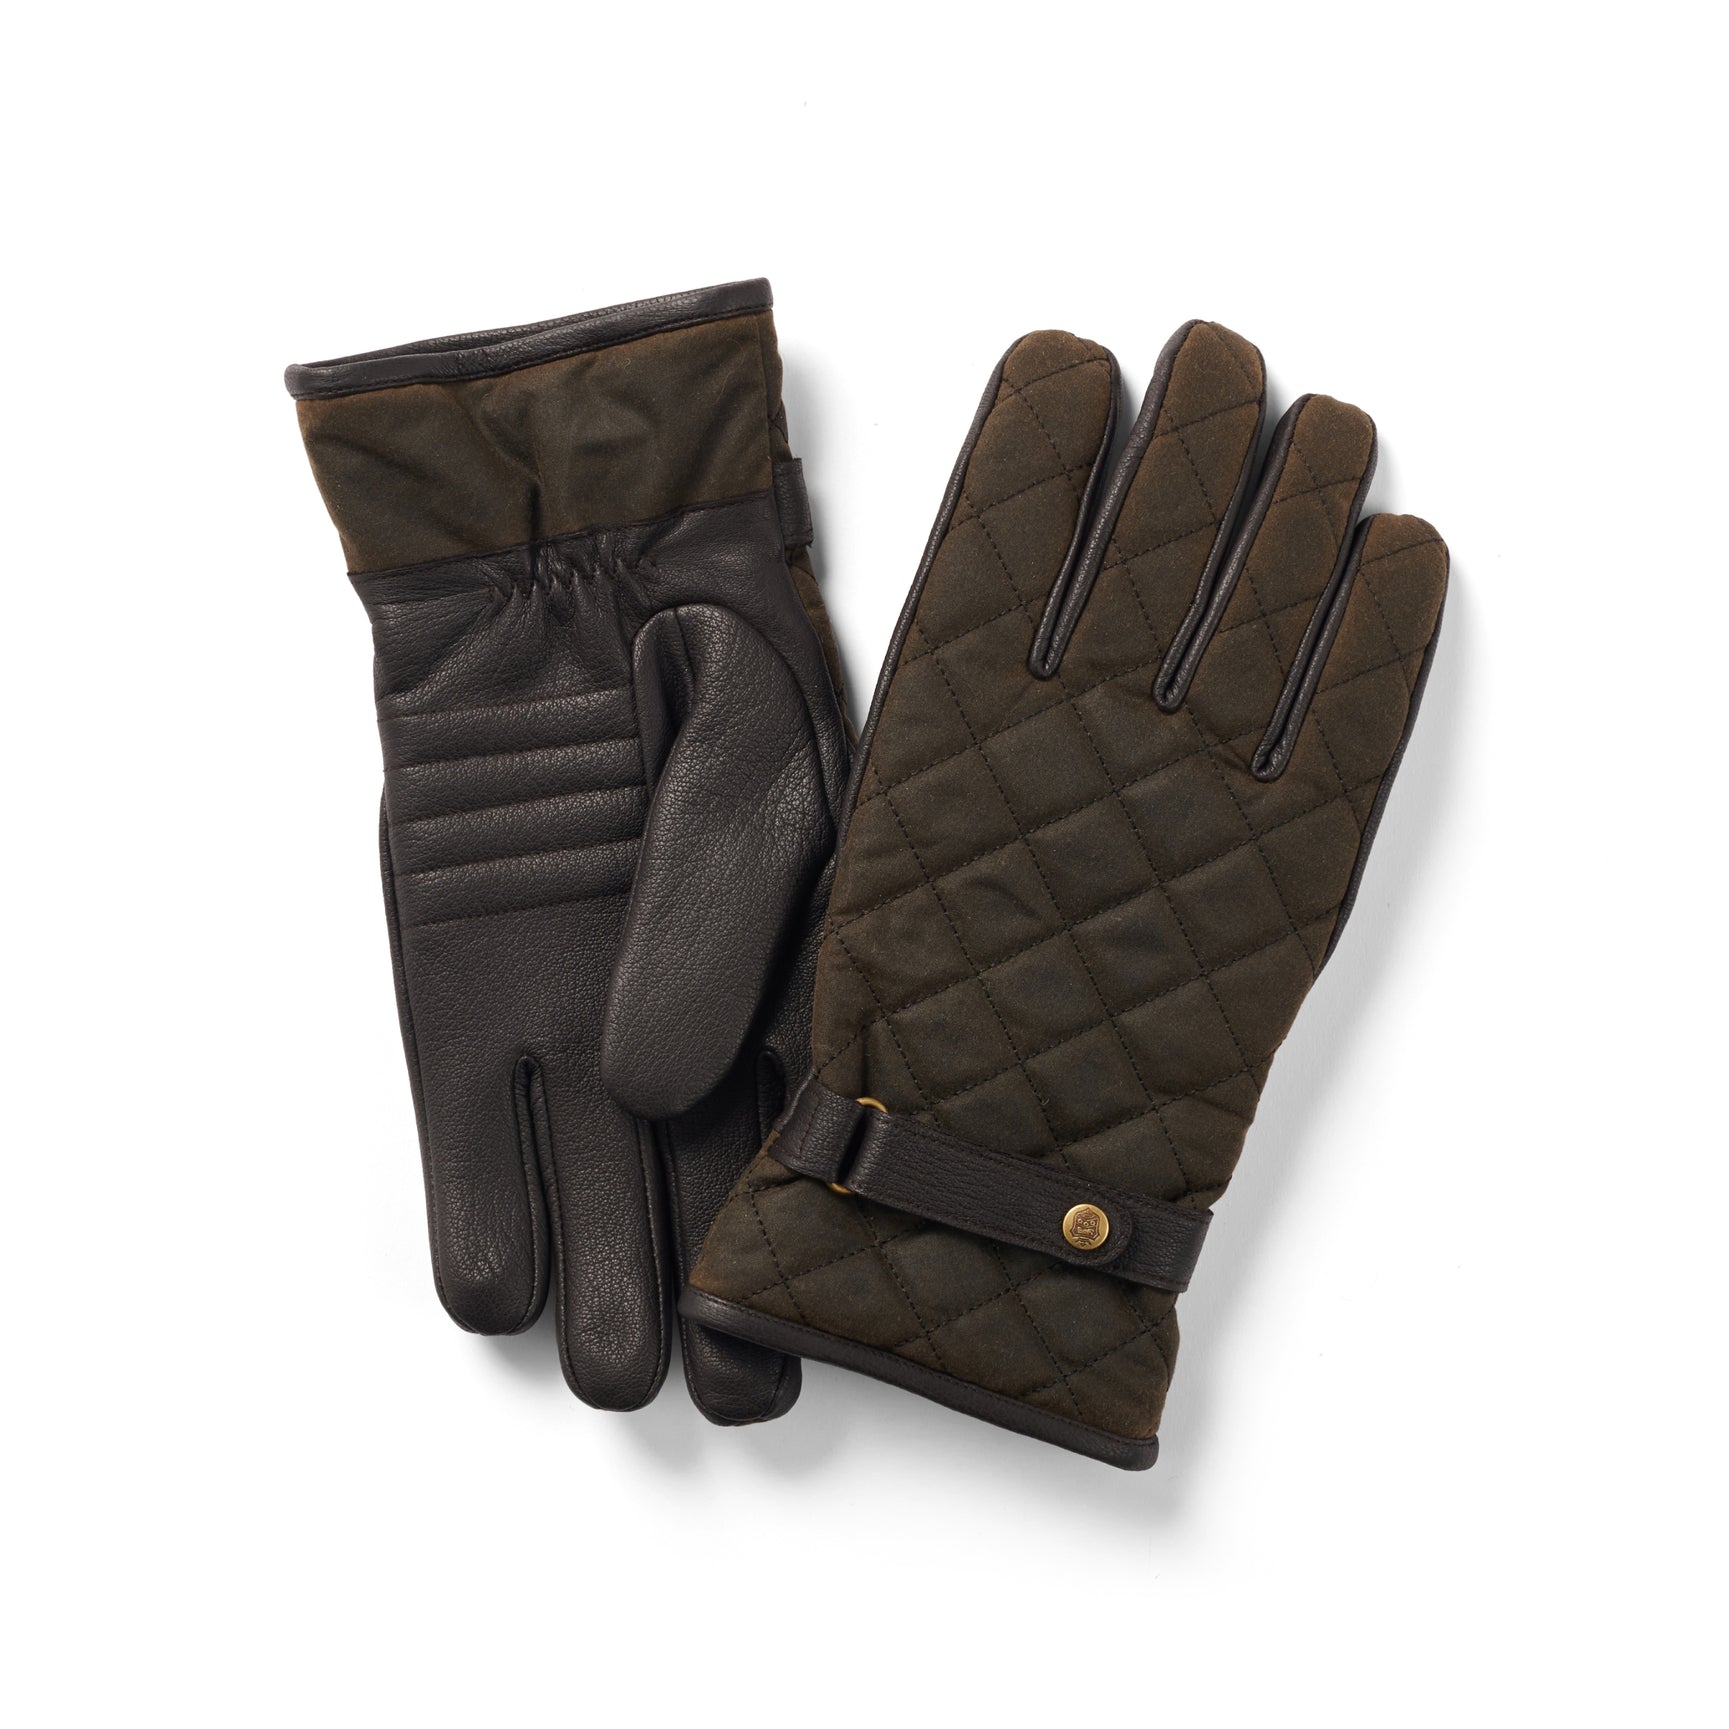 Billede af Handske Wax-Leather, oilskin/læder, oliven/brun - S